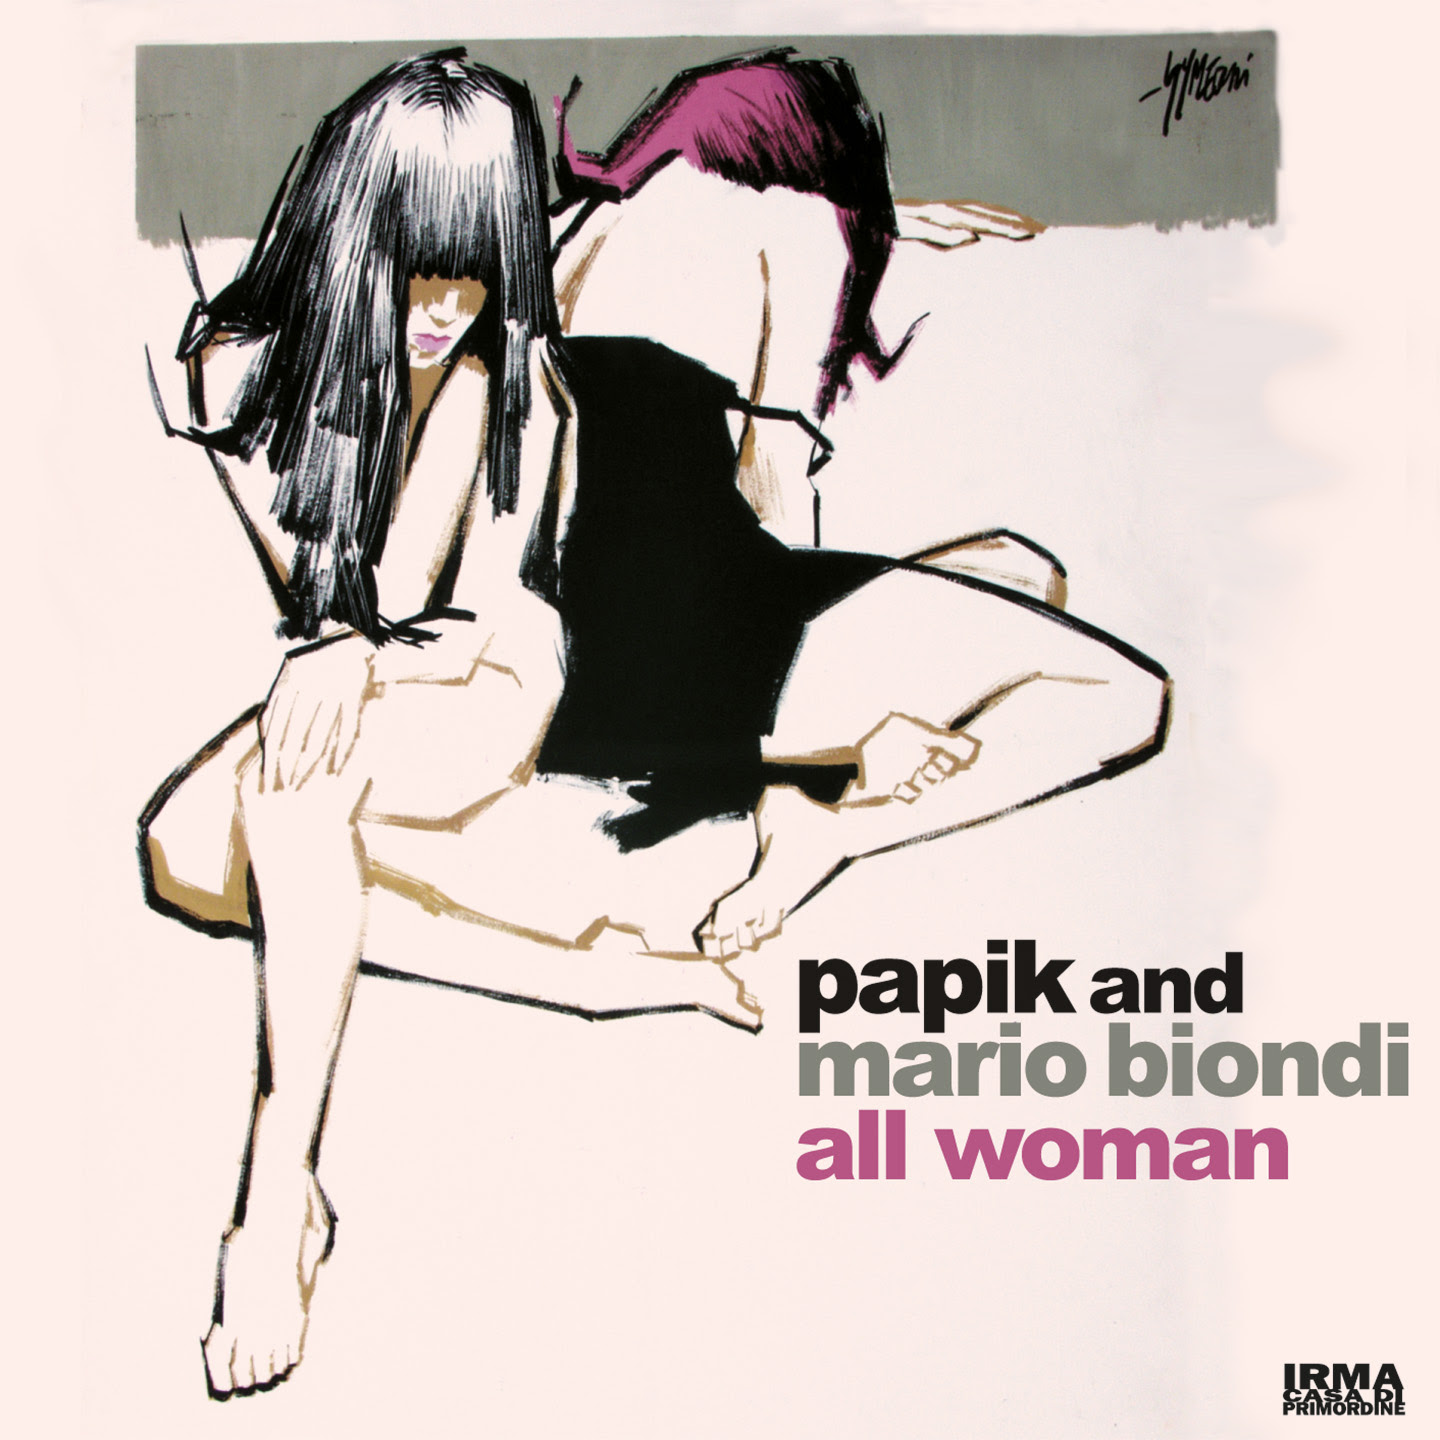 Dal 3 marzo disponibile su tutte le piattaforme All woman, il nuovo singolo di Papik e Mario Biondi